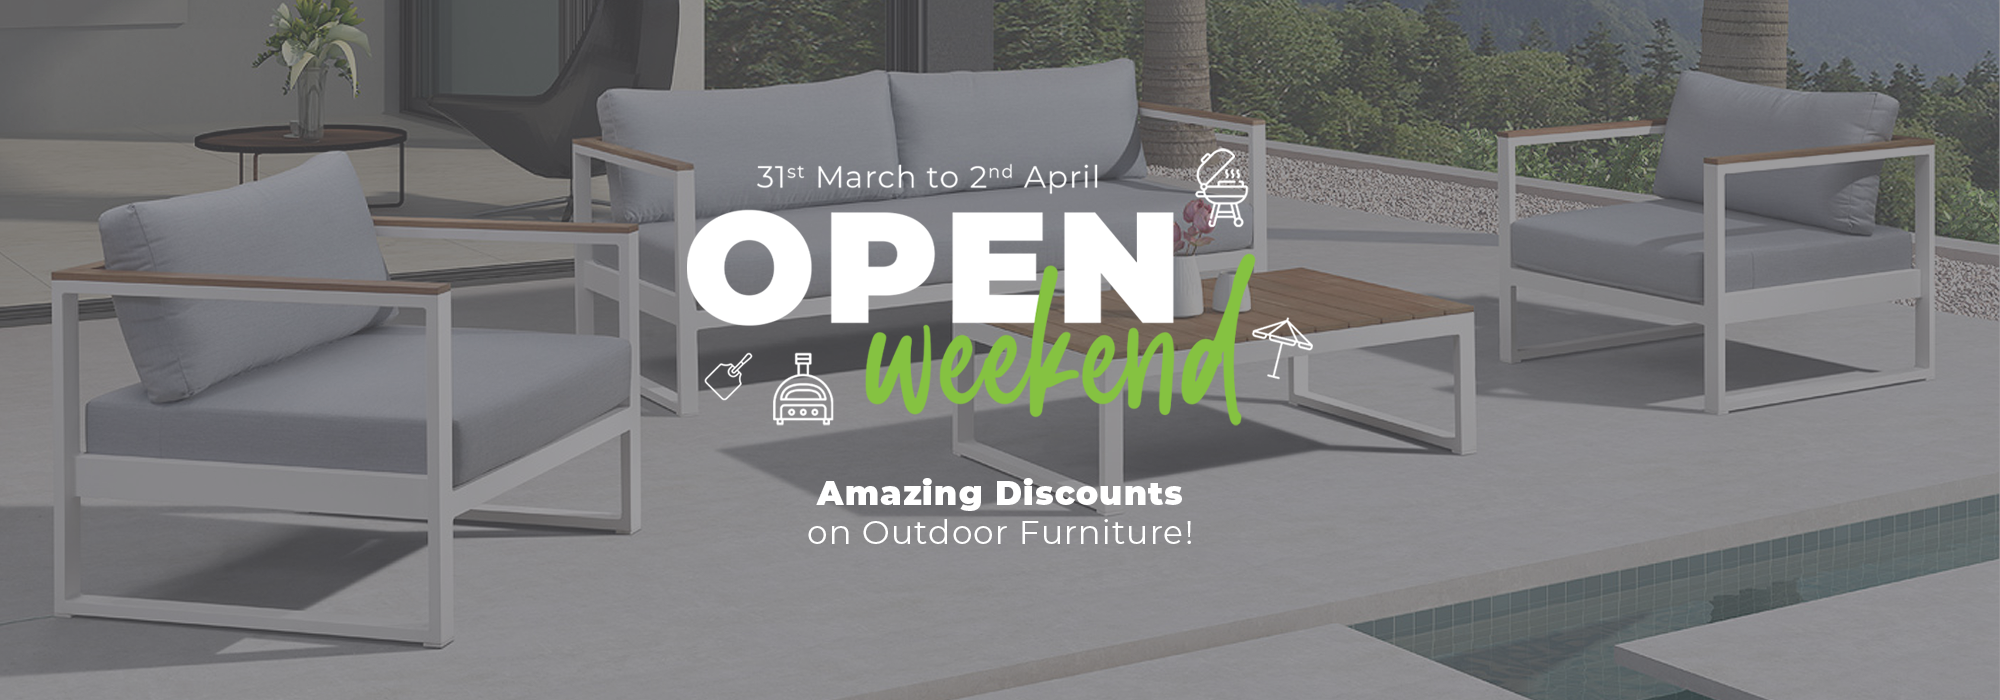 Open Weekend Outdoor Furniture